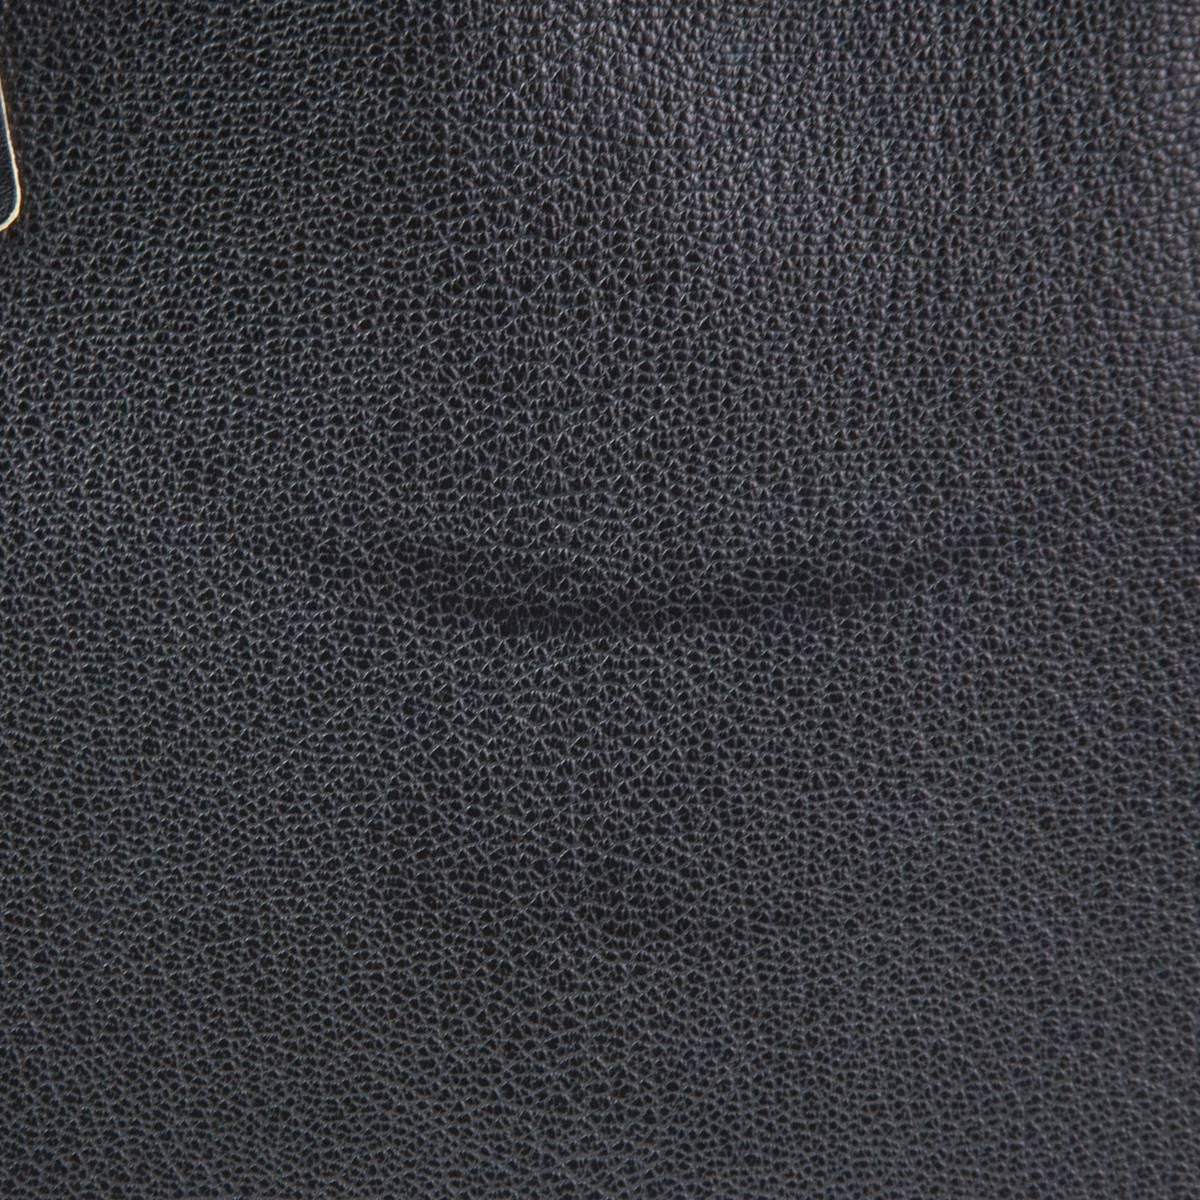 Women's or Men's 2003 Louis Vuitton Black Suhali Le Fabuleux Bag